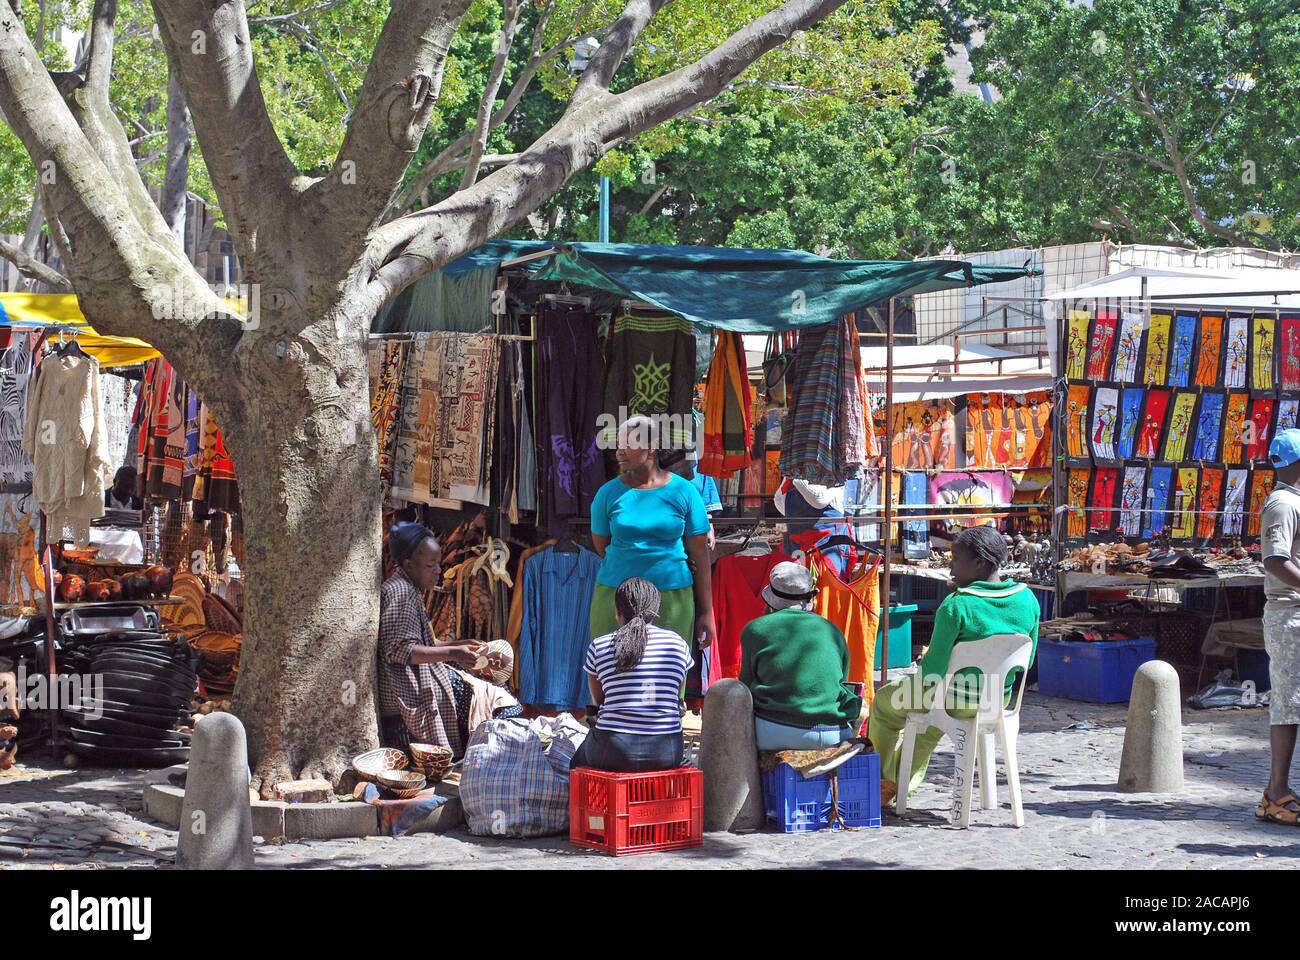 Sud Africains au stand de souvenirs, Greenmarket, Cape Town, Afrique, Afrique du Sud Banque D'Images